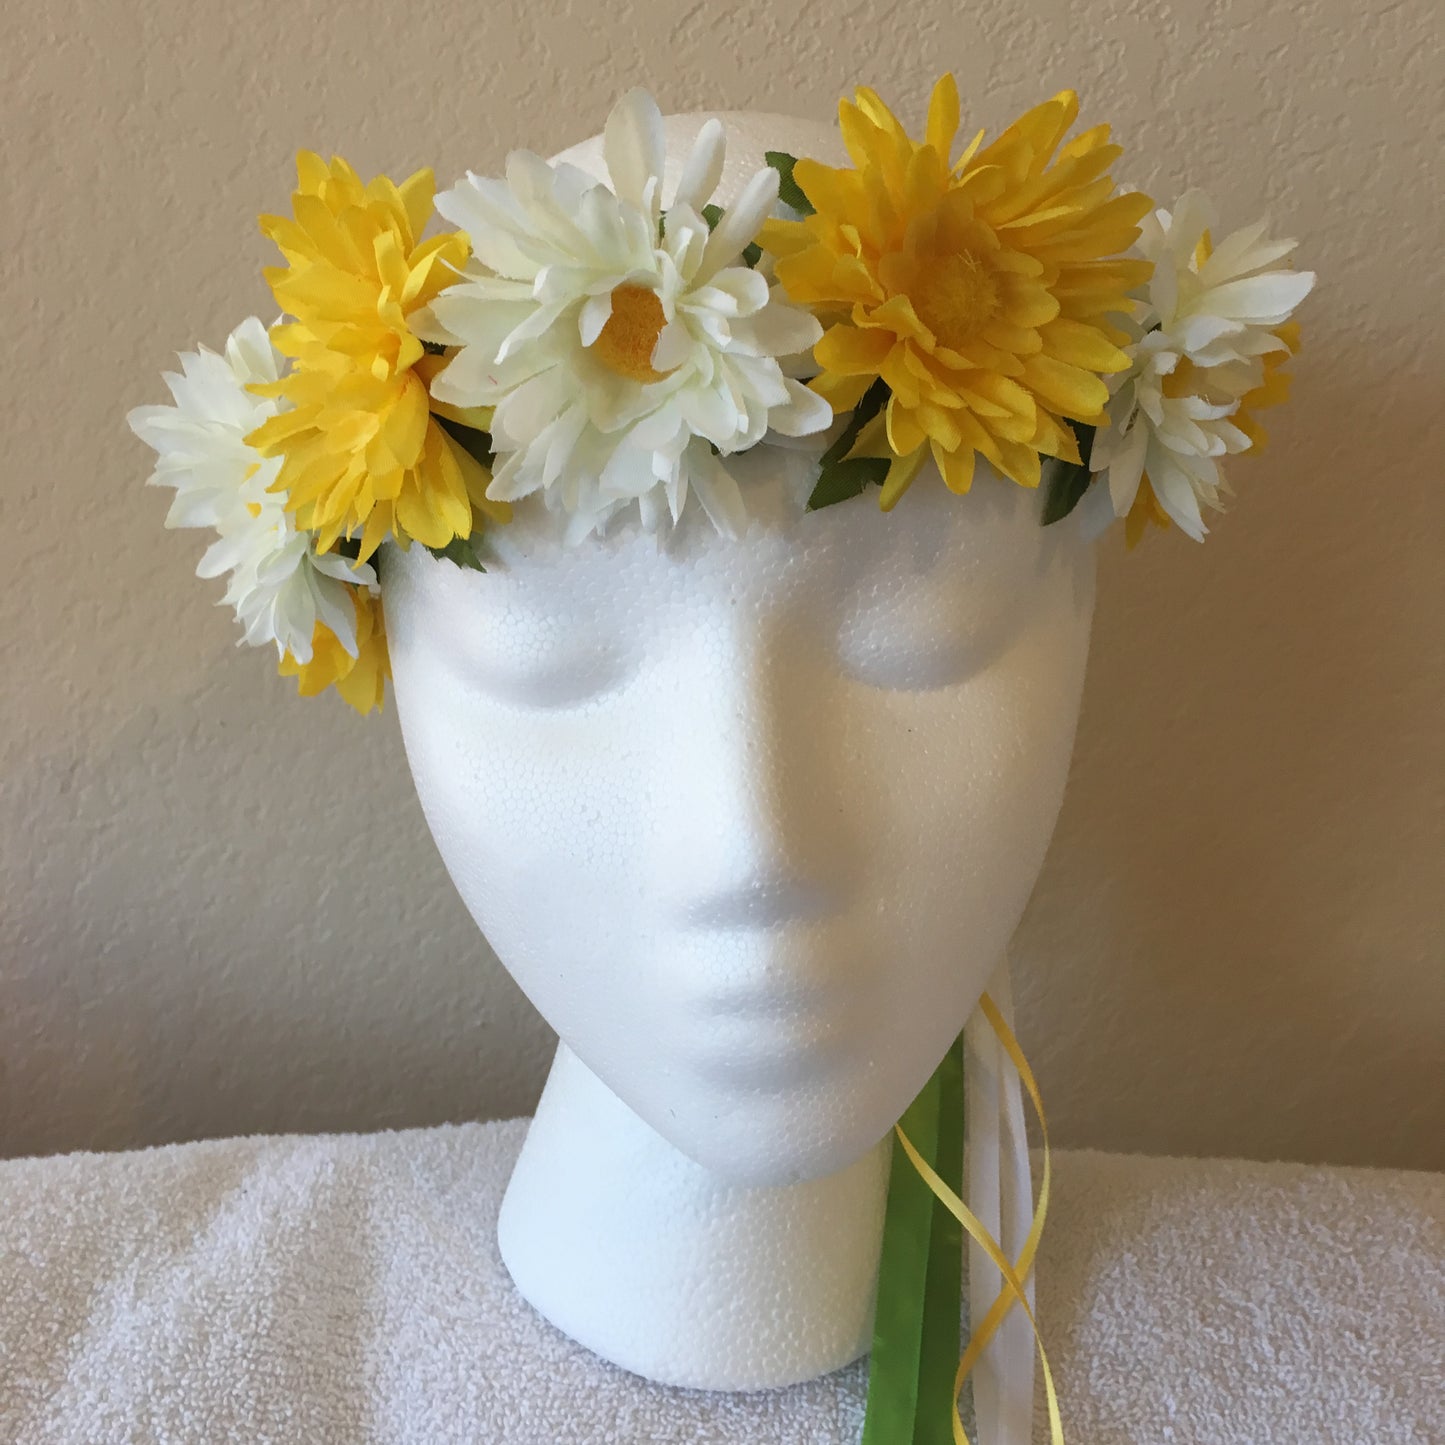 Small Wreath - White & yellow daisies